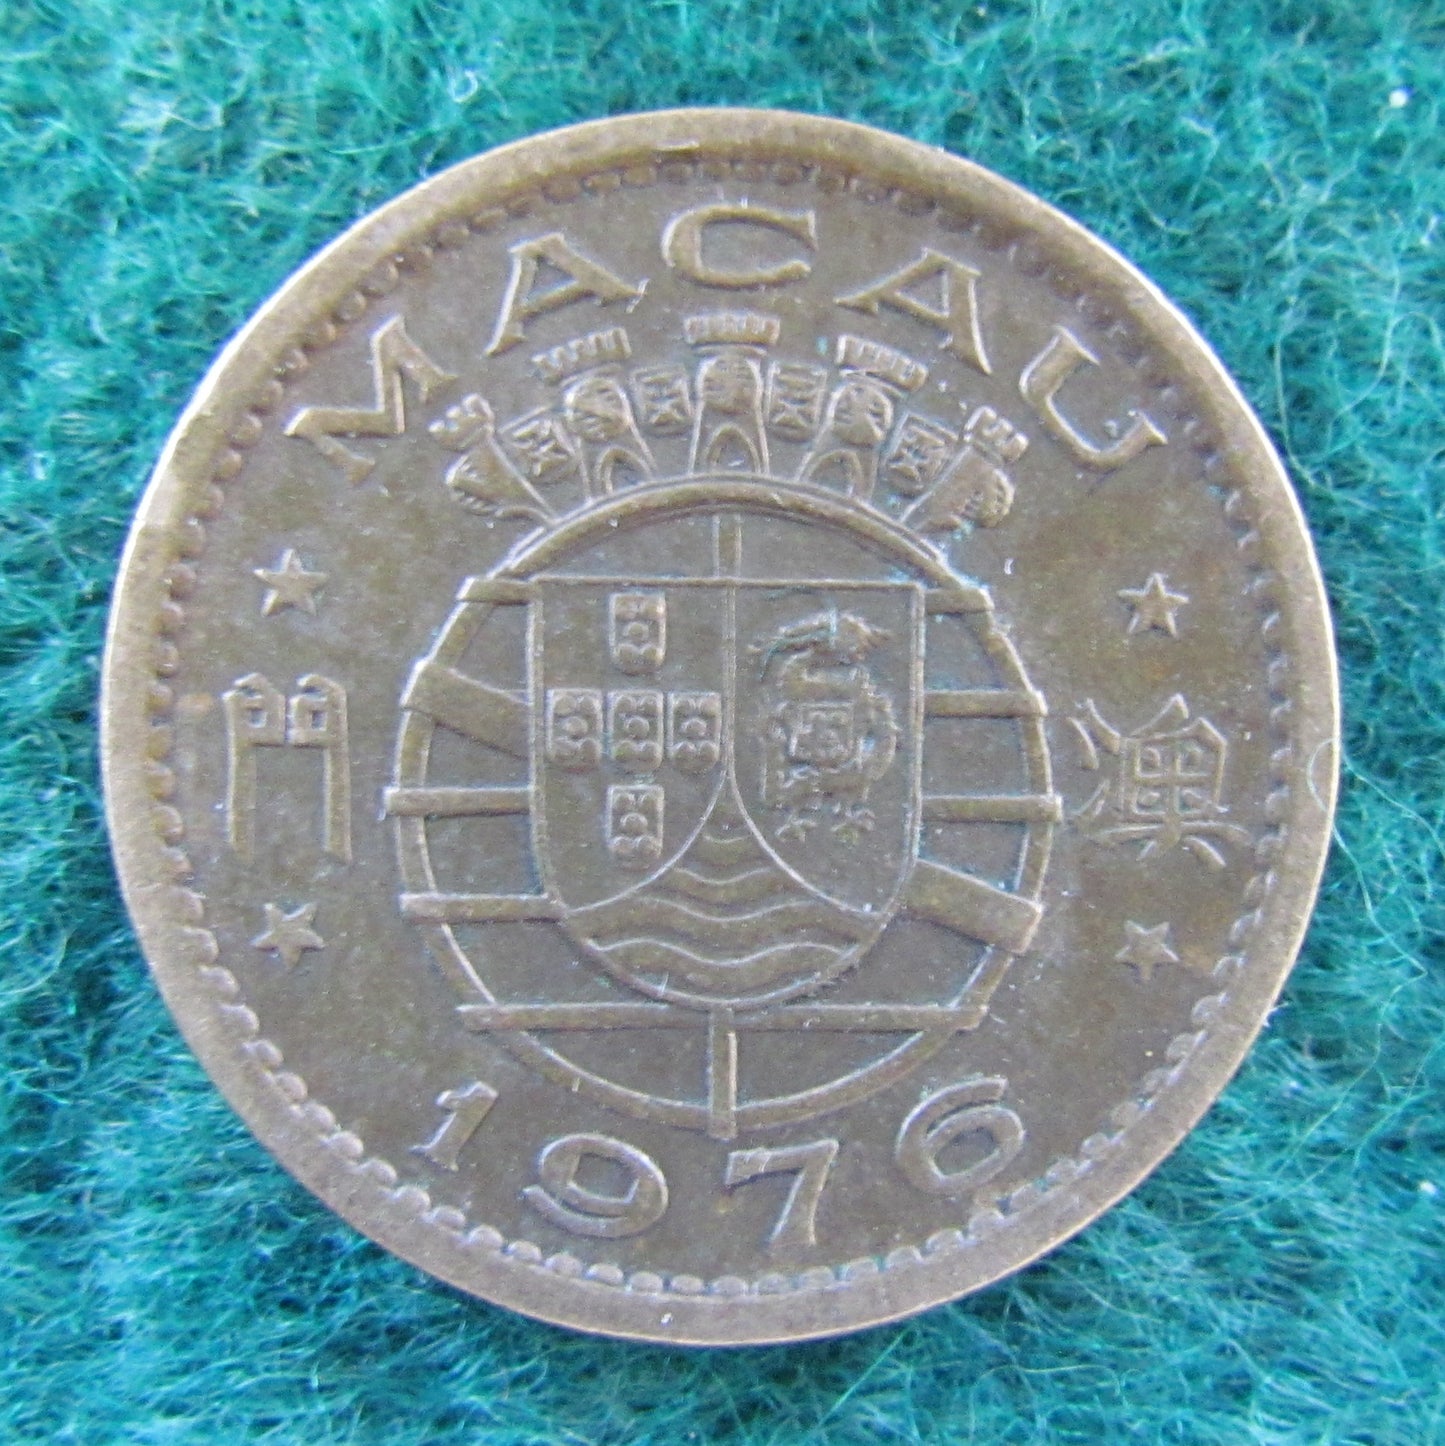 Macau Portuguese Republic 1976 10 Avos Coin - Circulated